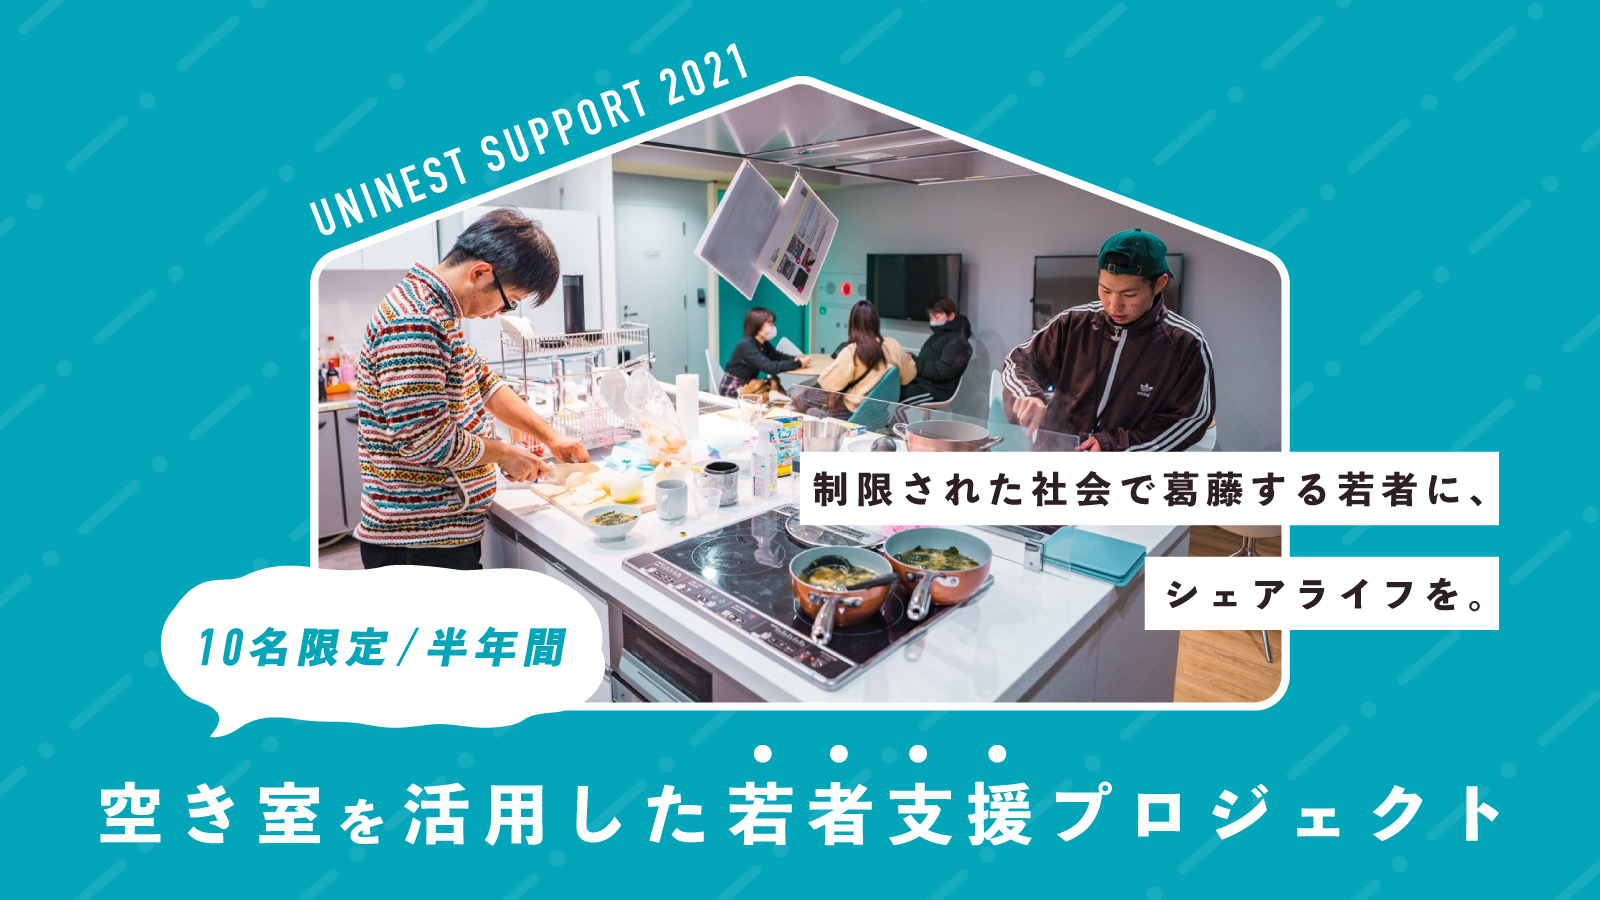 Tabippoがユニネストとともに 大型国際シェアハウス Kamikita House の空き室を活用した若者支援プロジェクトを開始 株式会社 Tabippoのプレスリリース